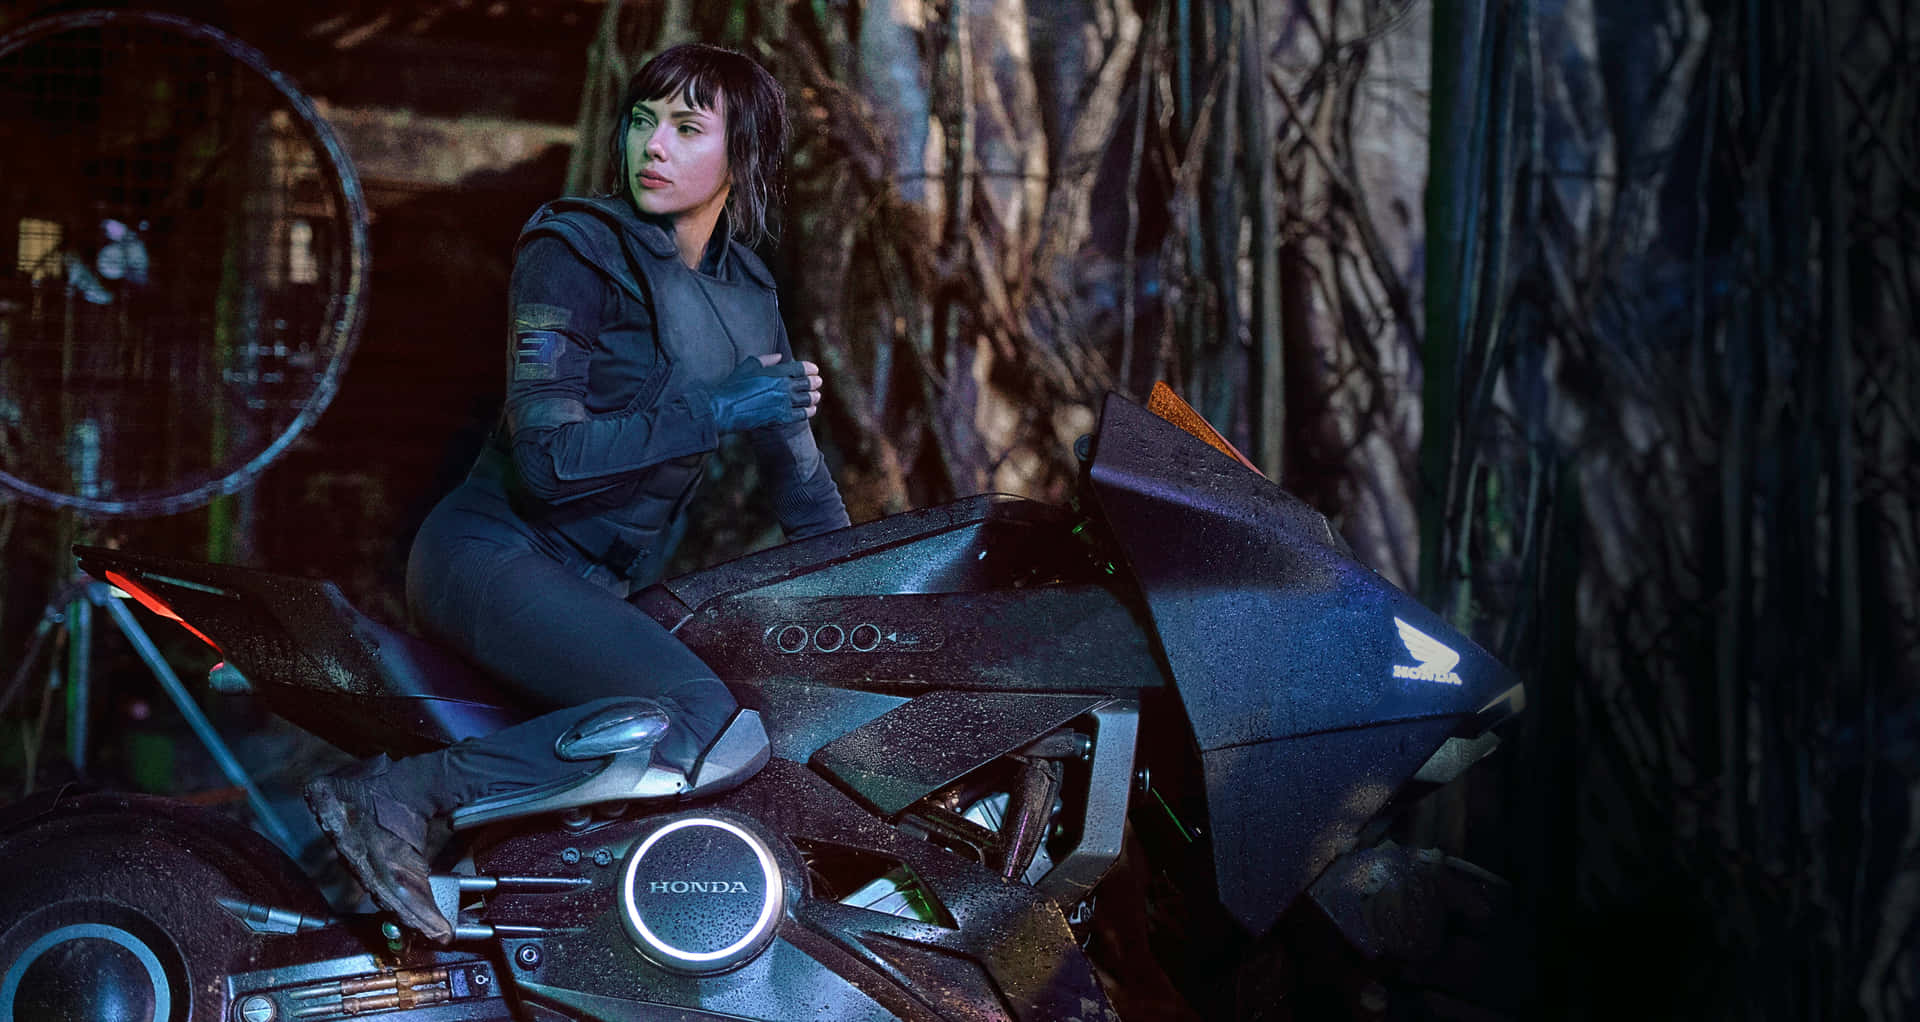 Scarred cyborg Mira Killian battles dangerous technology in “Ghost In The Shell”